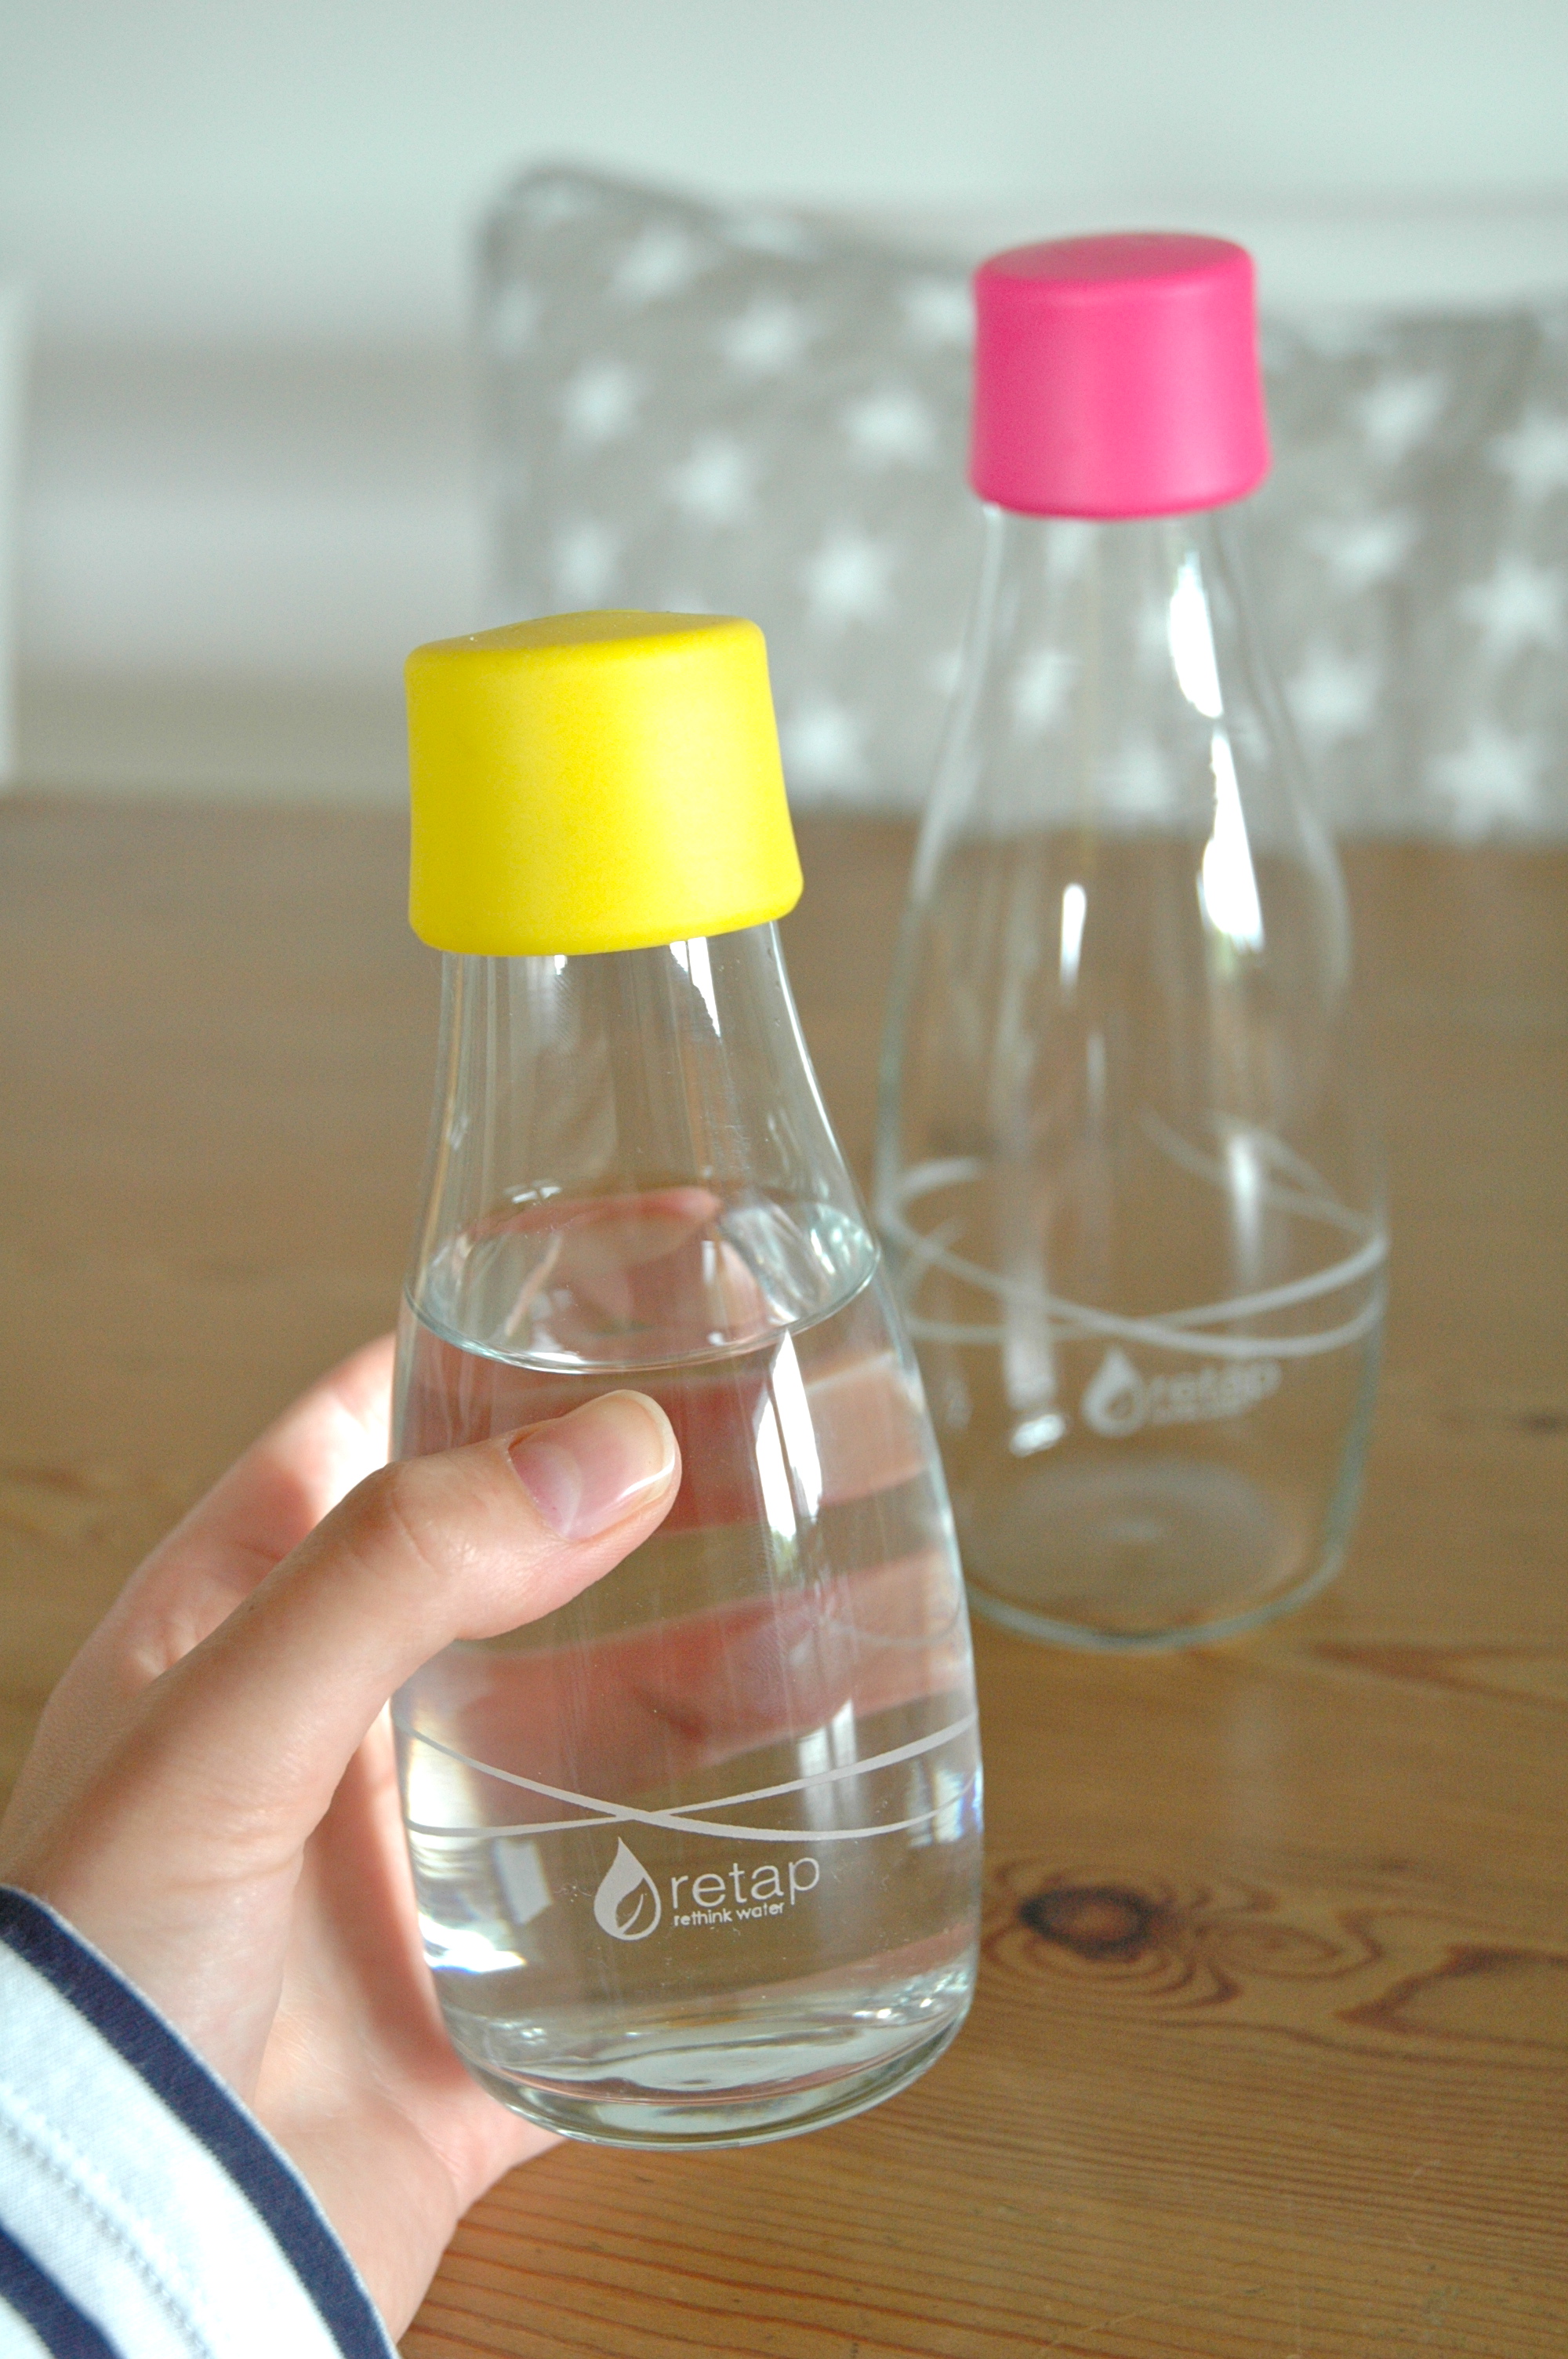 Retap water bottles